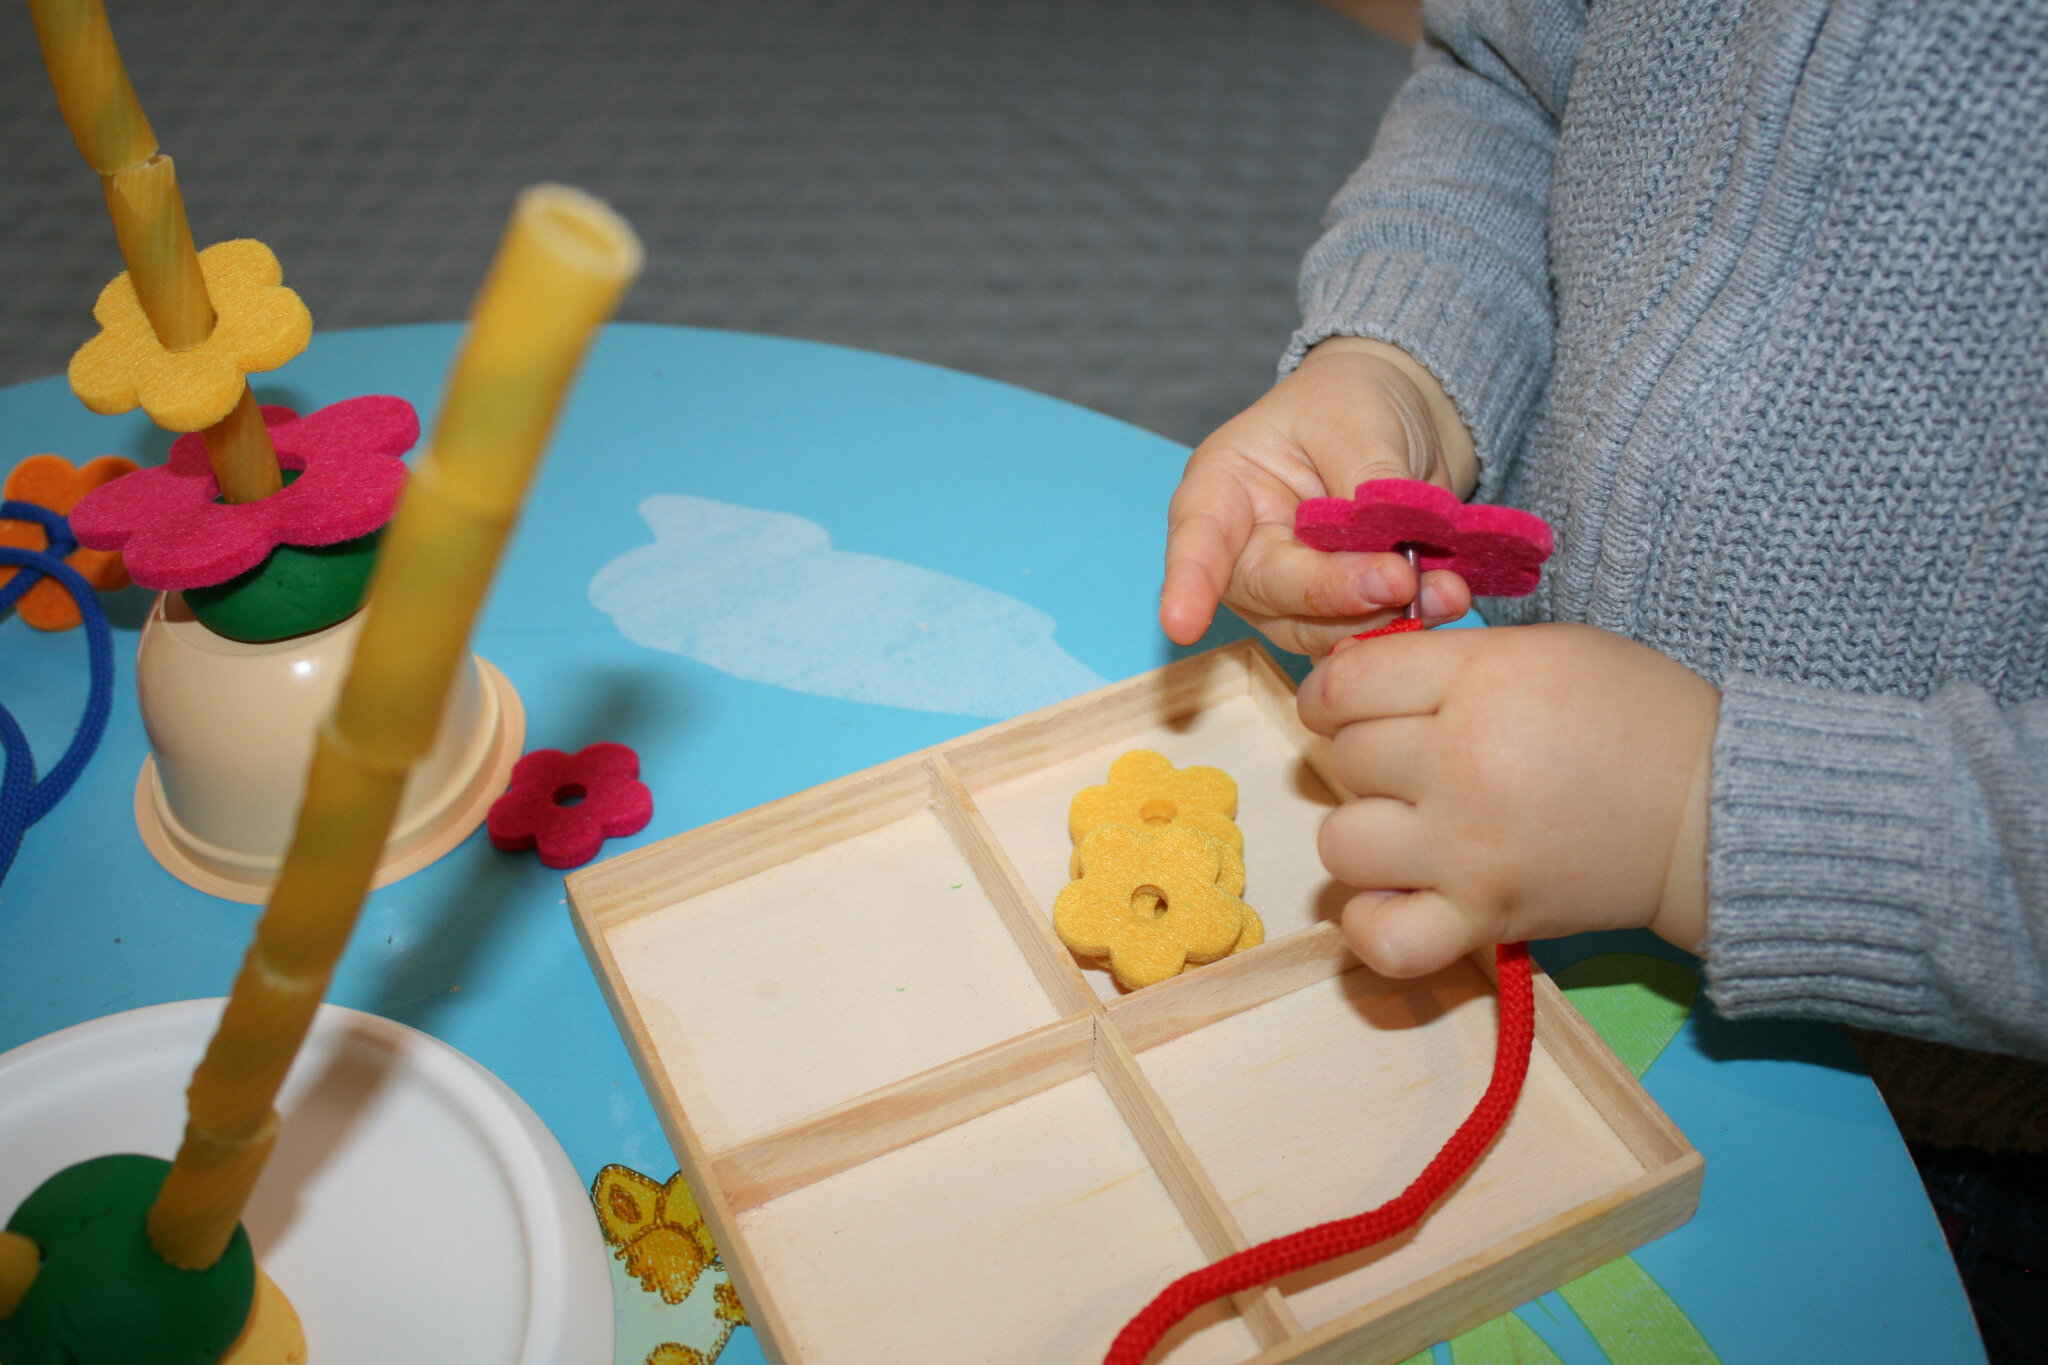 Les pâtes à manipuler, activités pour enfants de 0 à 18 mois.